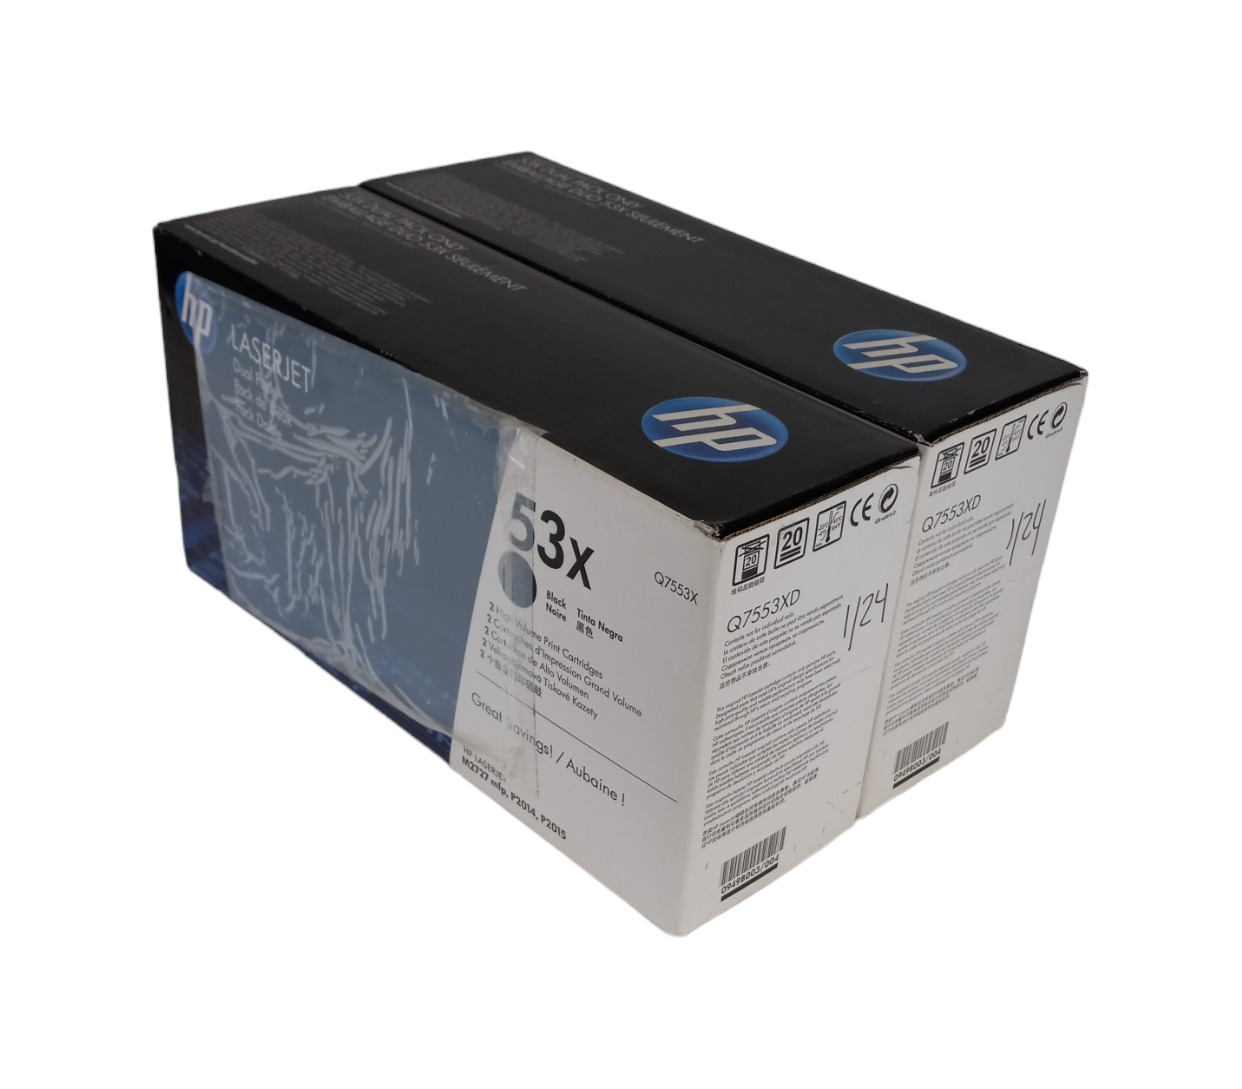 NEW HP 53X 2 Pack Black Toner Cartridge Q7553X HP LaserJet M2727 mfp P2014 P2015